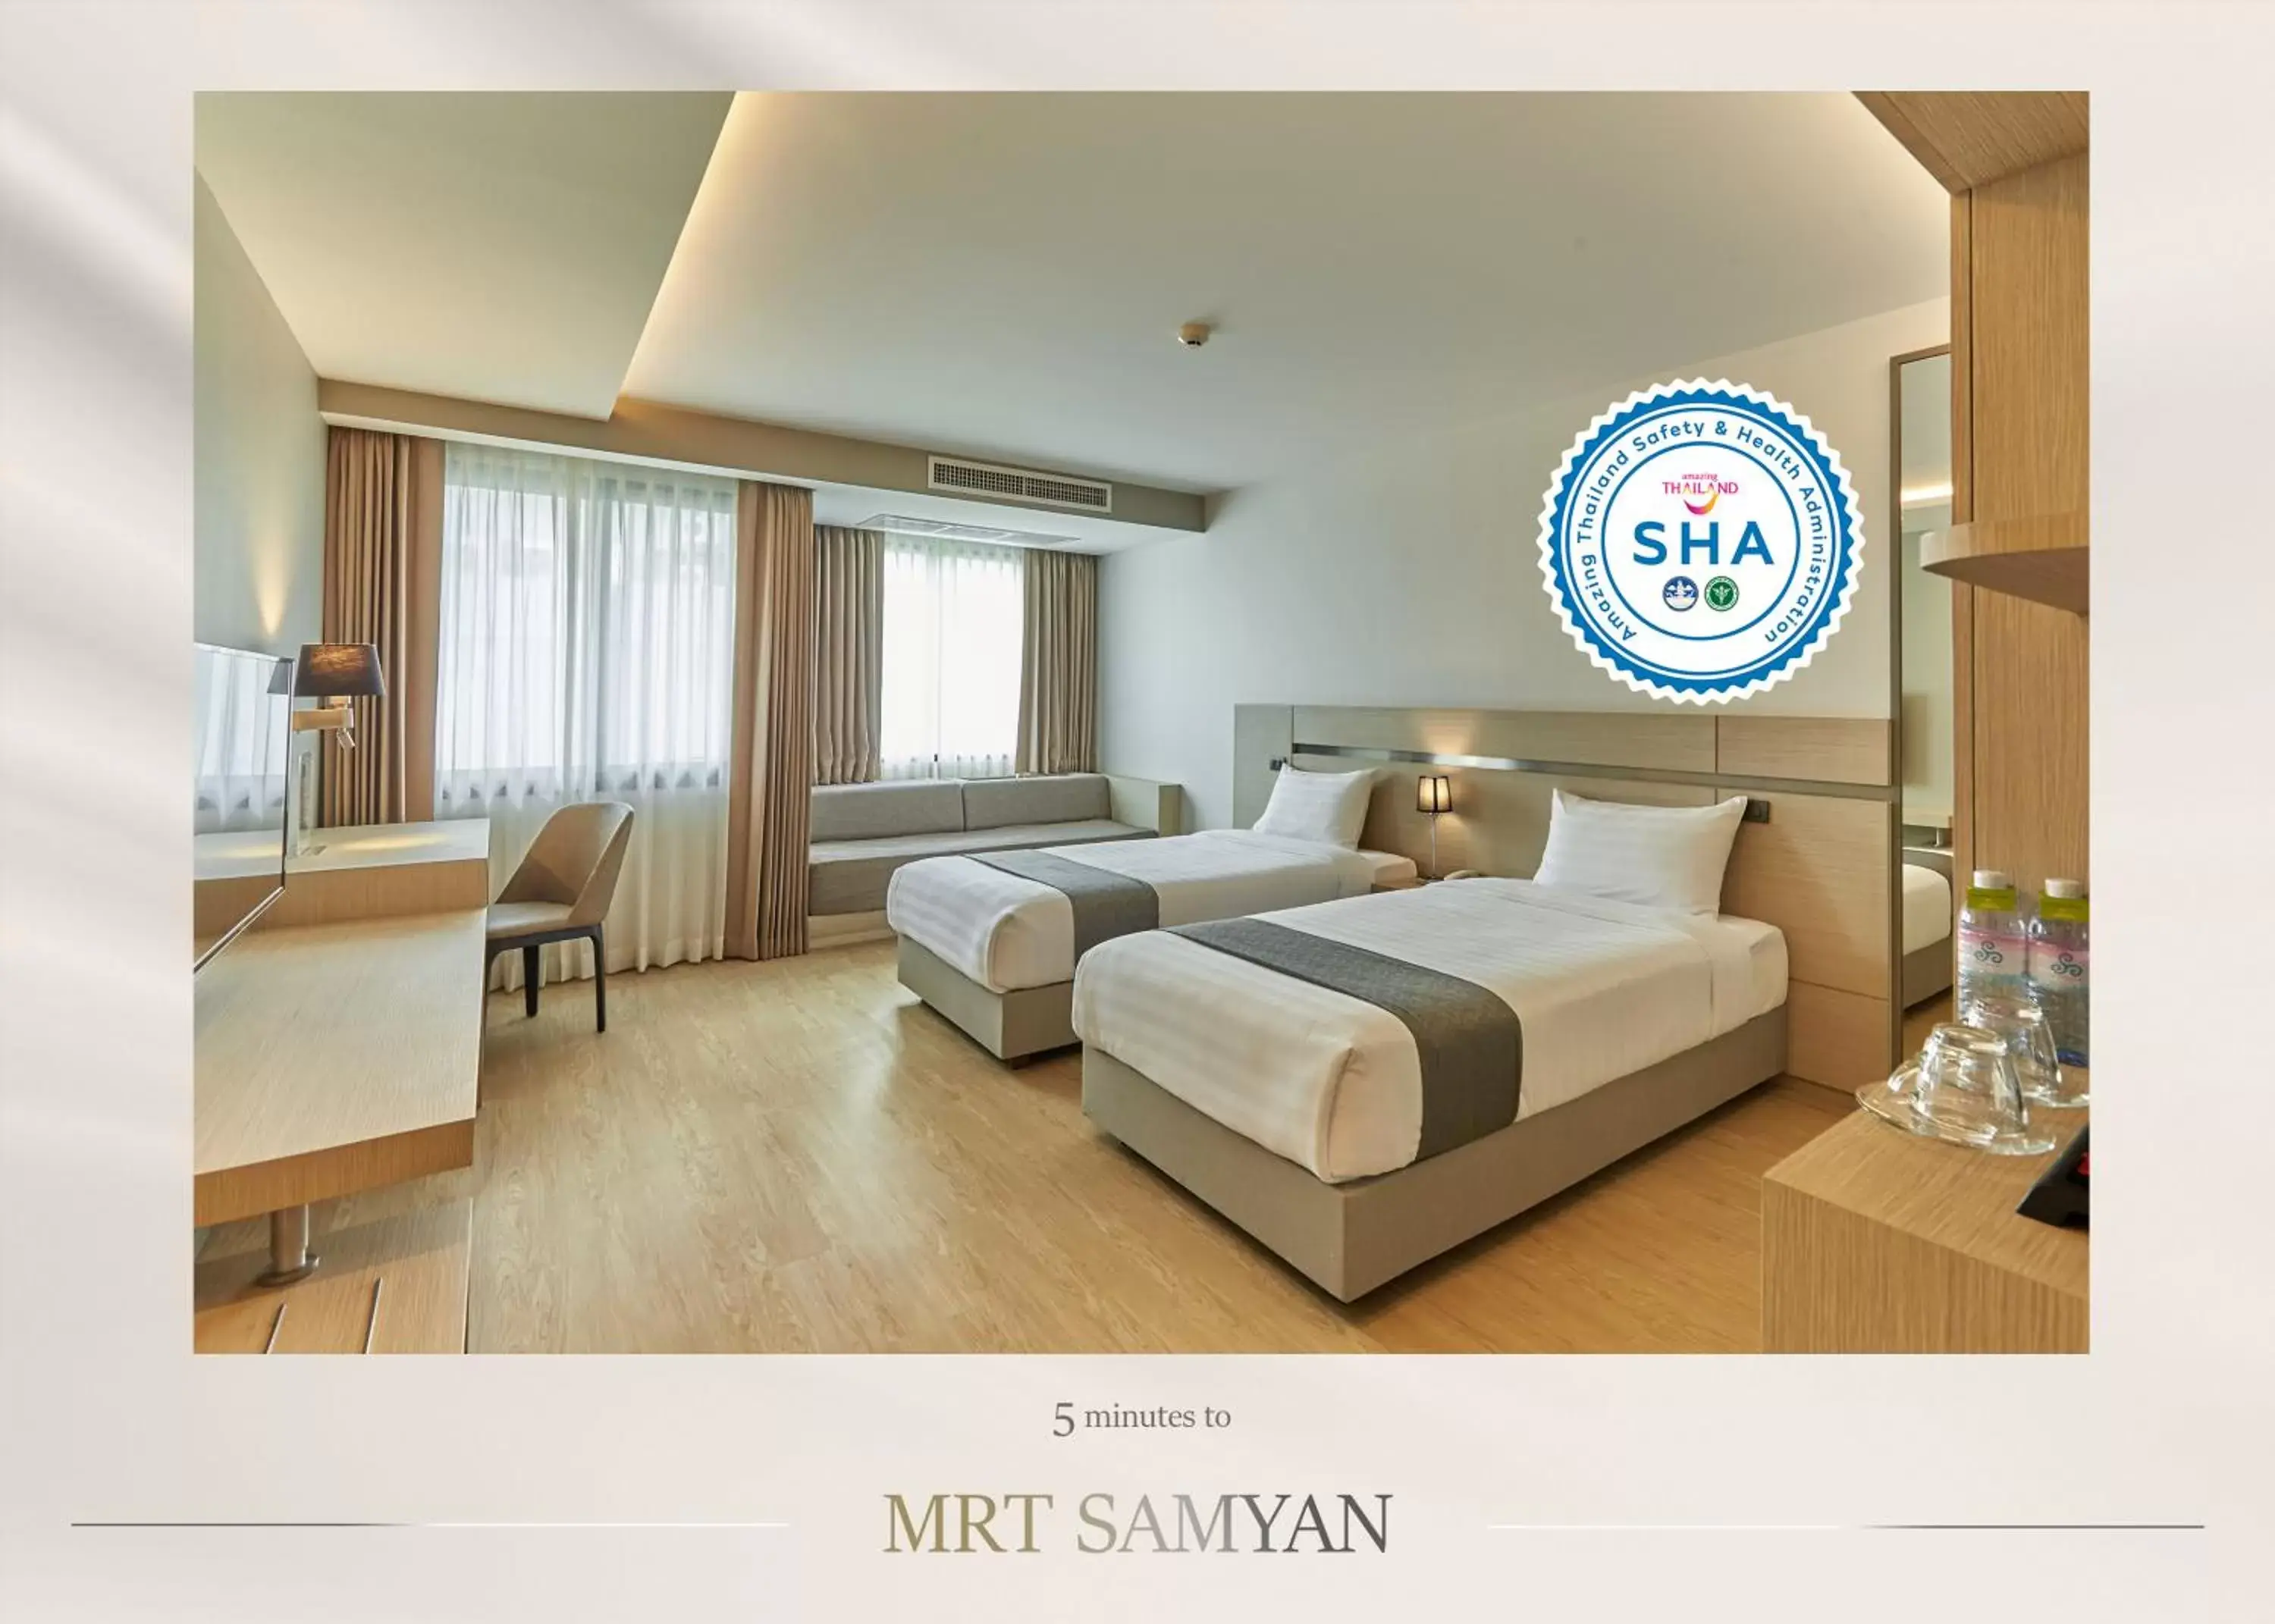 Certificate/Award in Samyan Serene Hotel